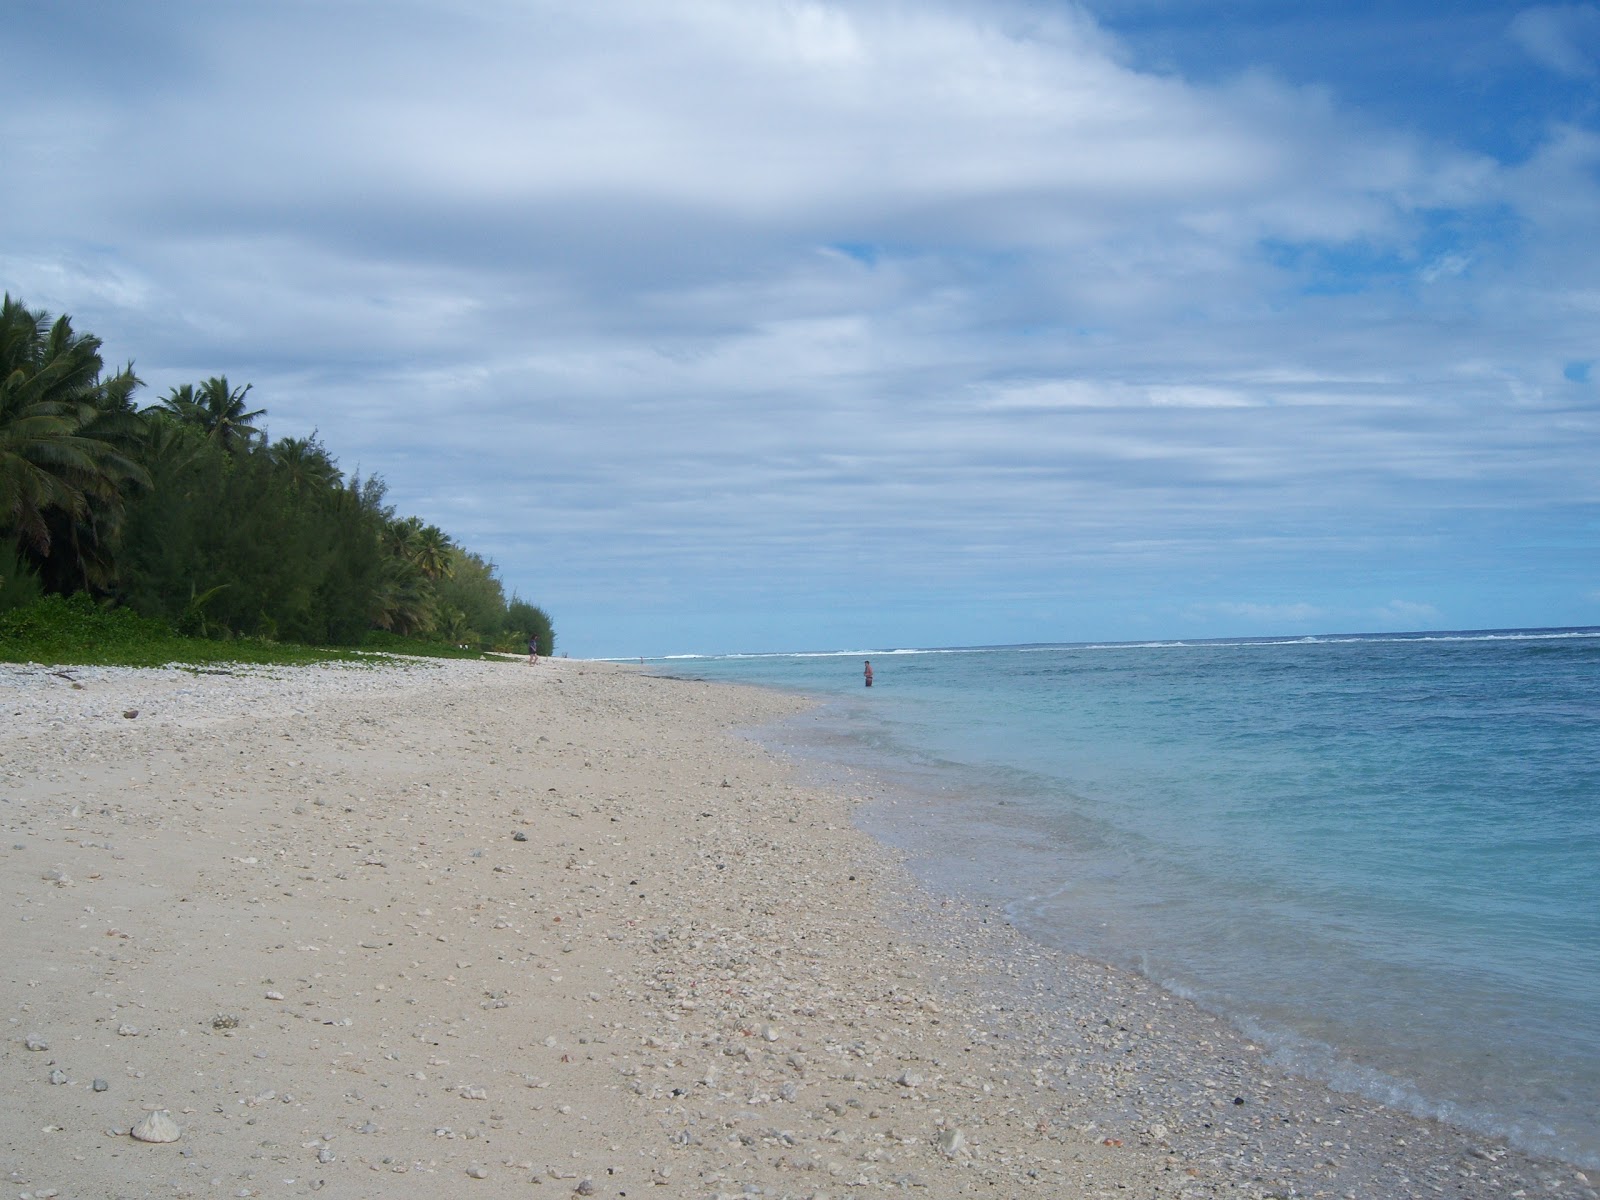 Fotografie cu Tokerau Beach - locul popular printre cunoscătorii de relaxare